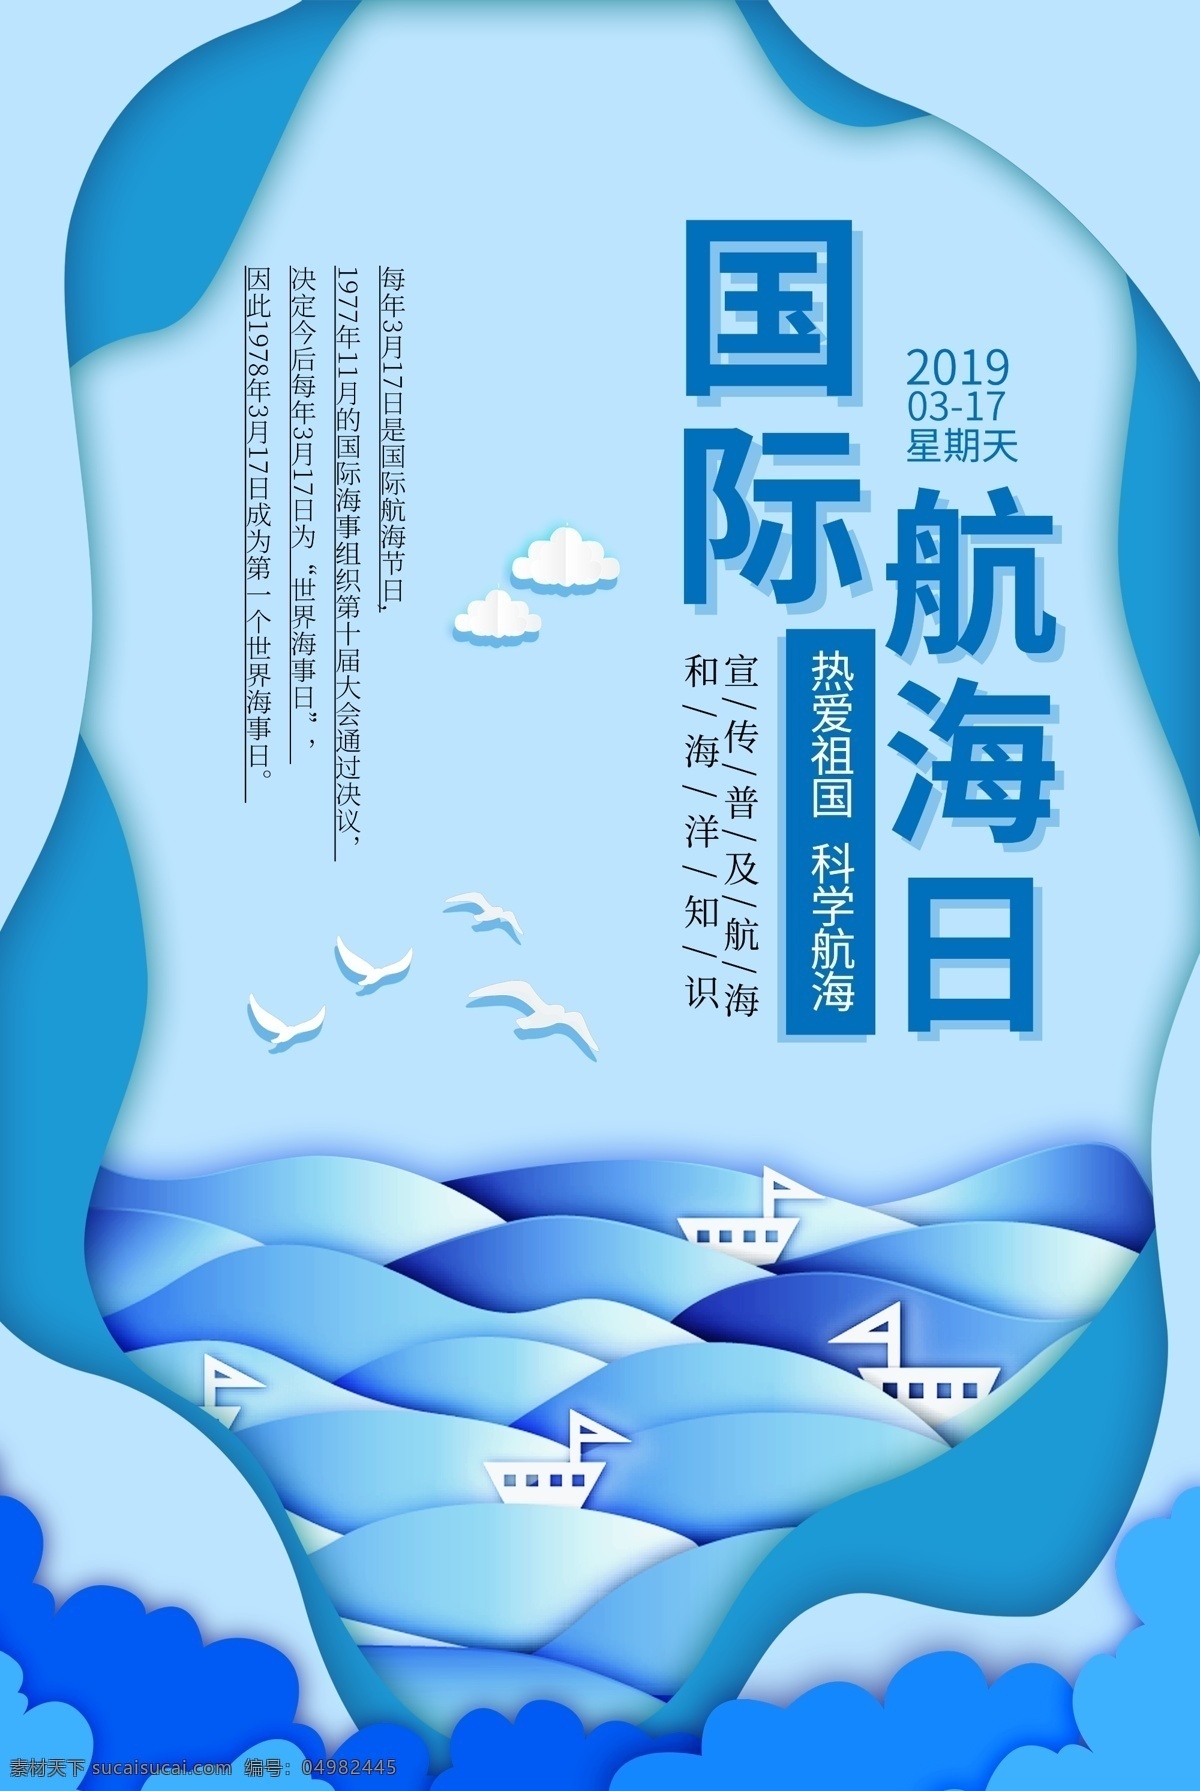 剪纸 蓝色 国际 航海 日 海报 国际航海日 航海知识 航海梦 航海日宣传 航海日 航海宣传 3月17号